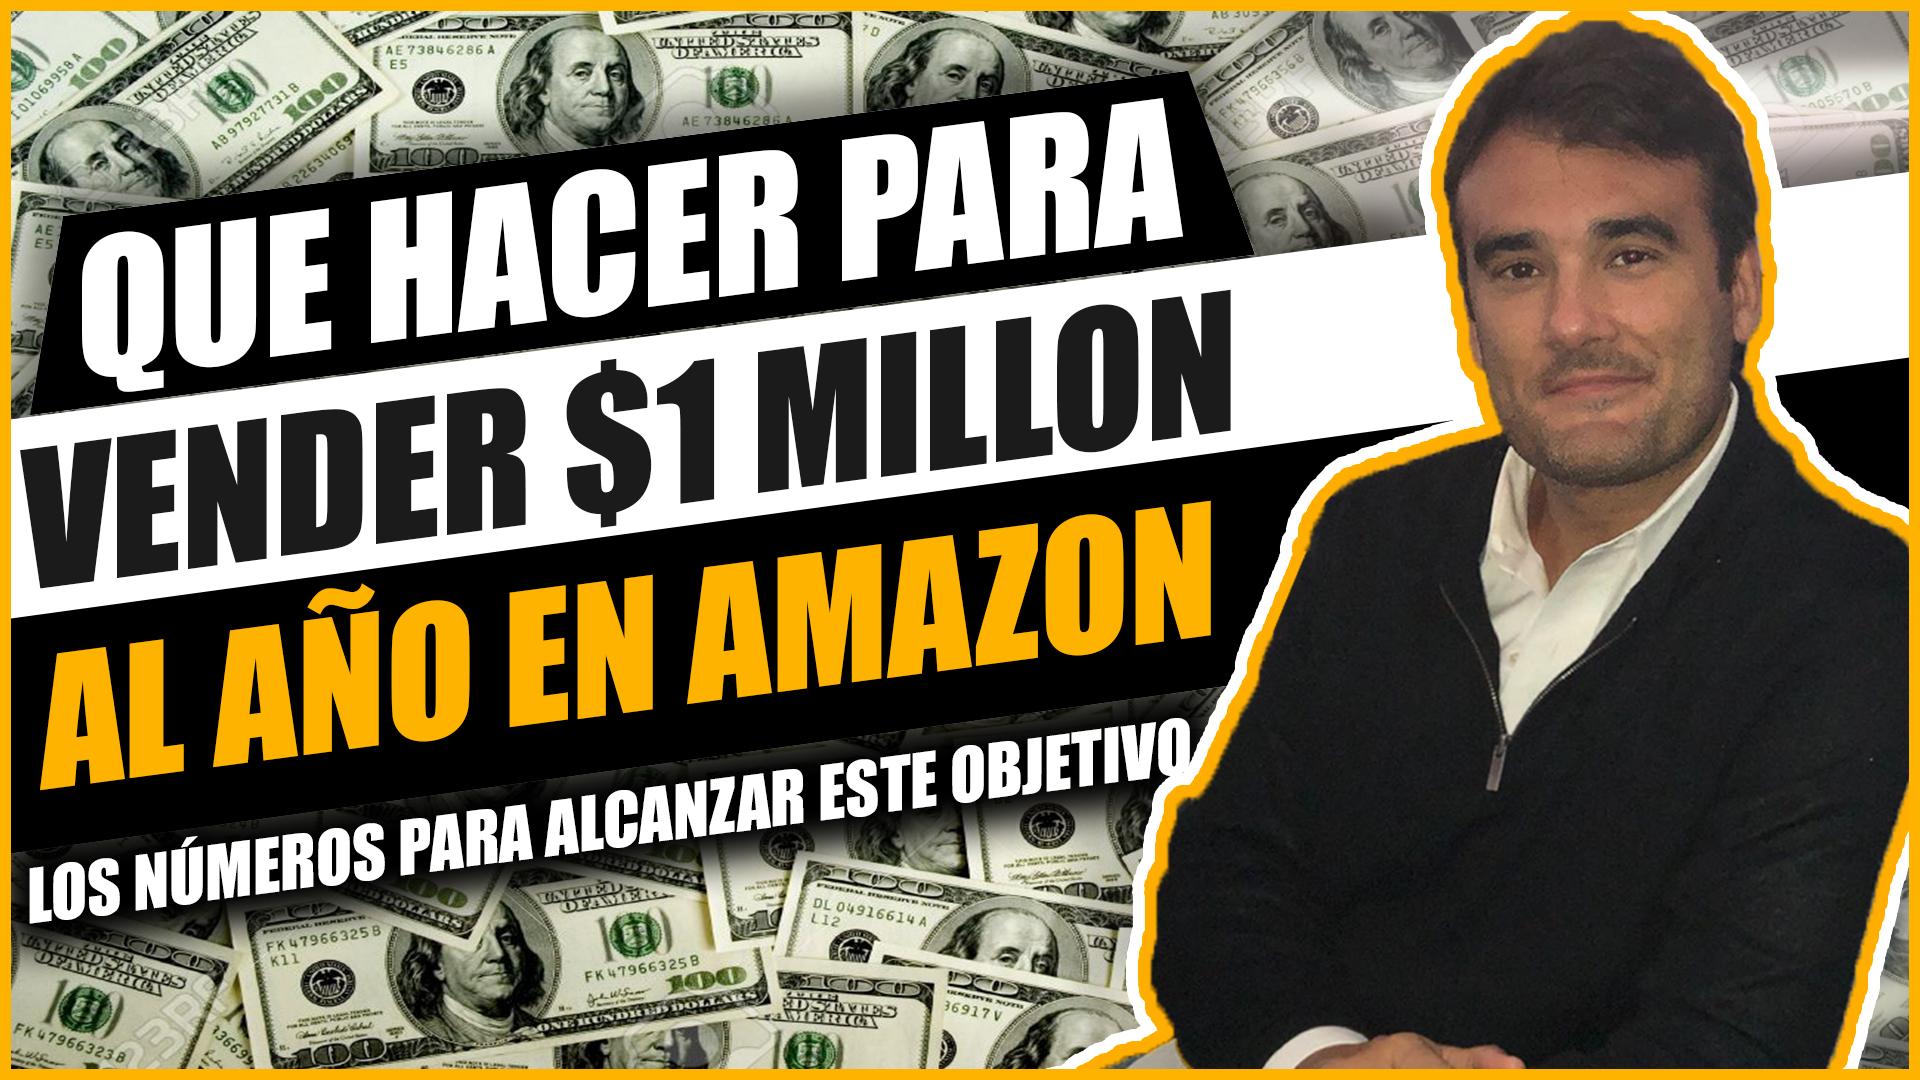 QUE HACER PARA VENDER $1 MILLON AL AÑO EN AMAZON